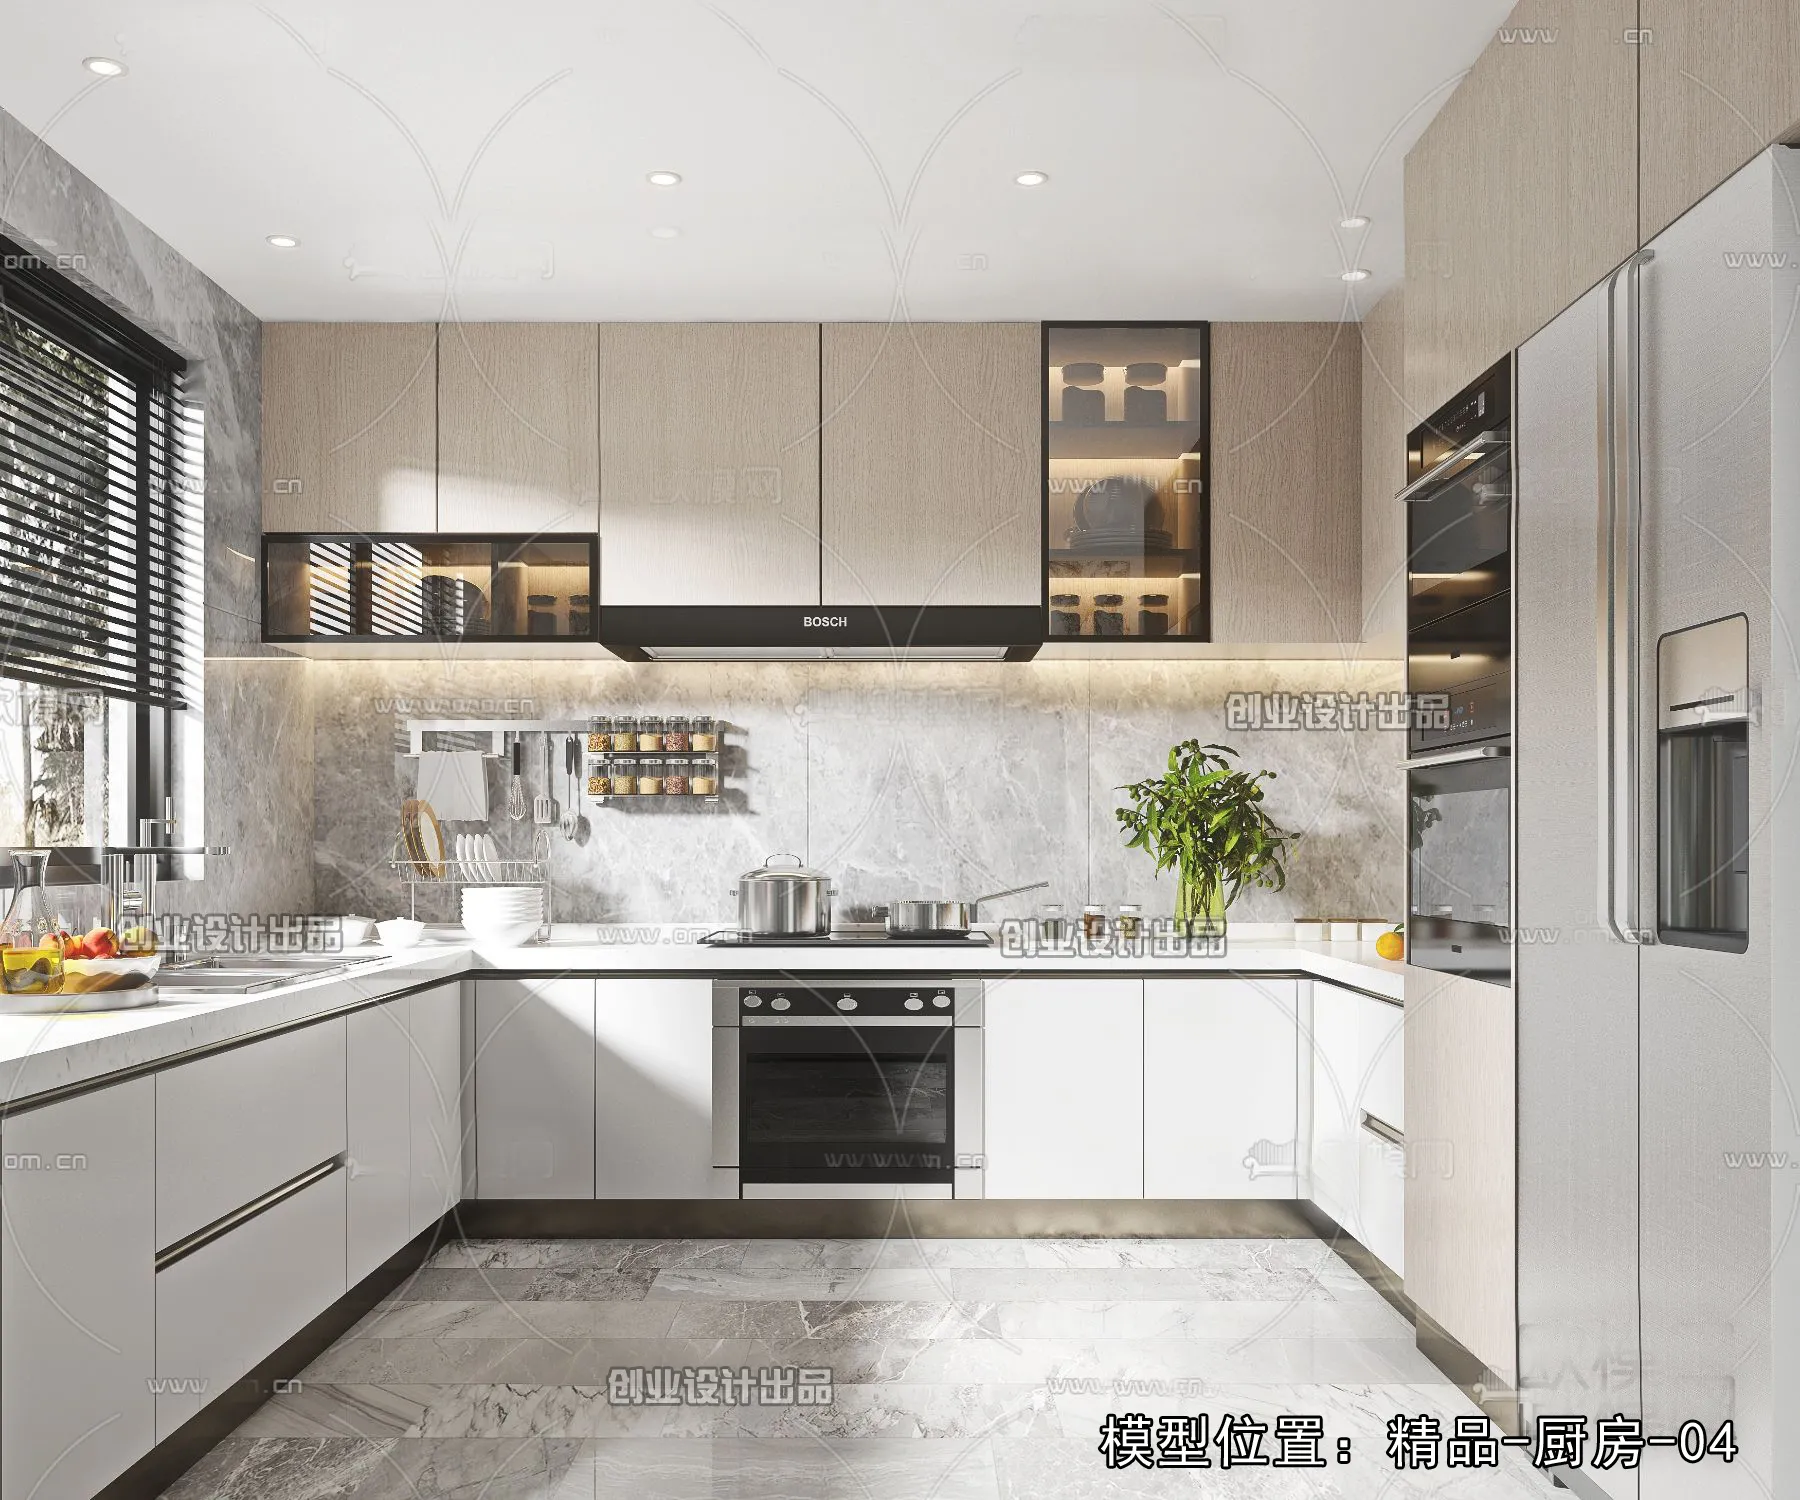 Kitchen – Modern Design – 3D66 – 3D Scenes – 017